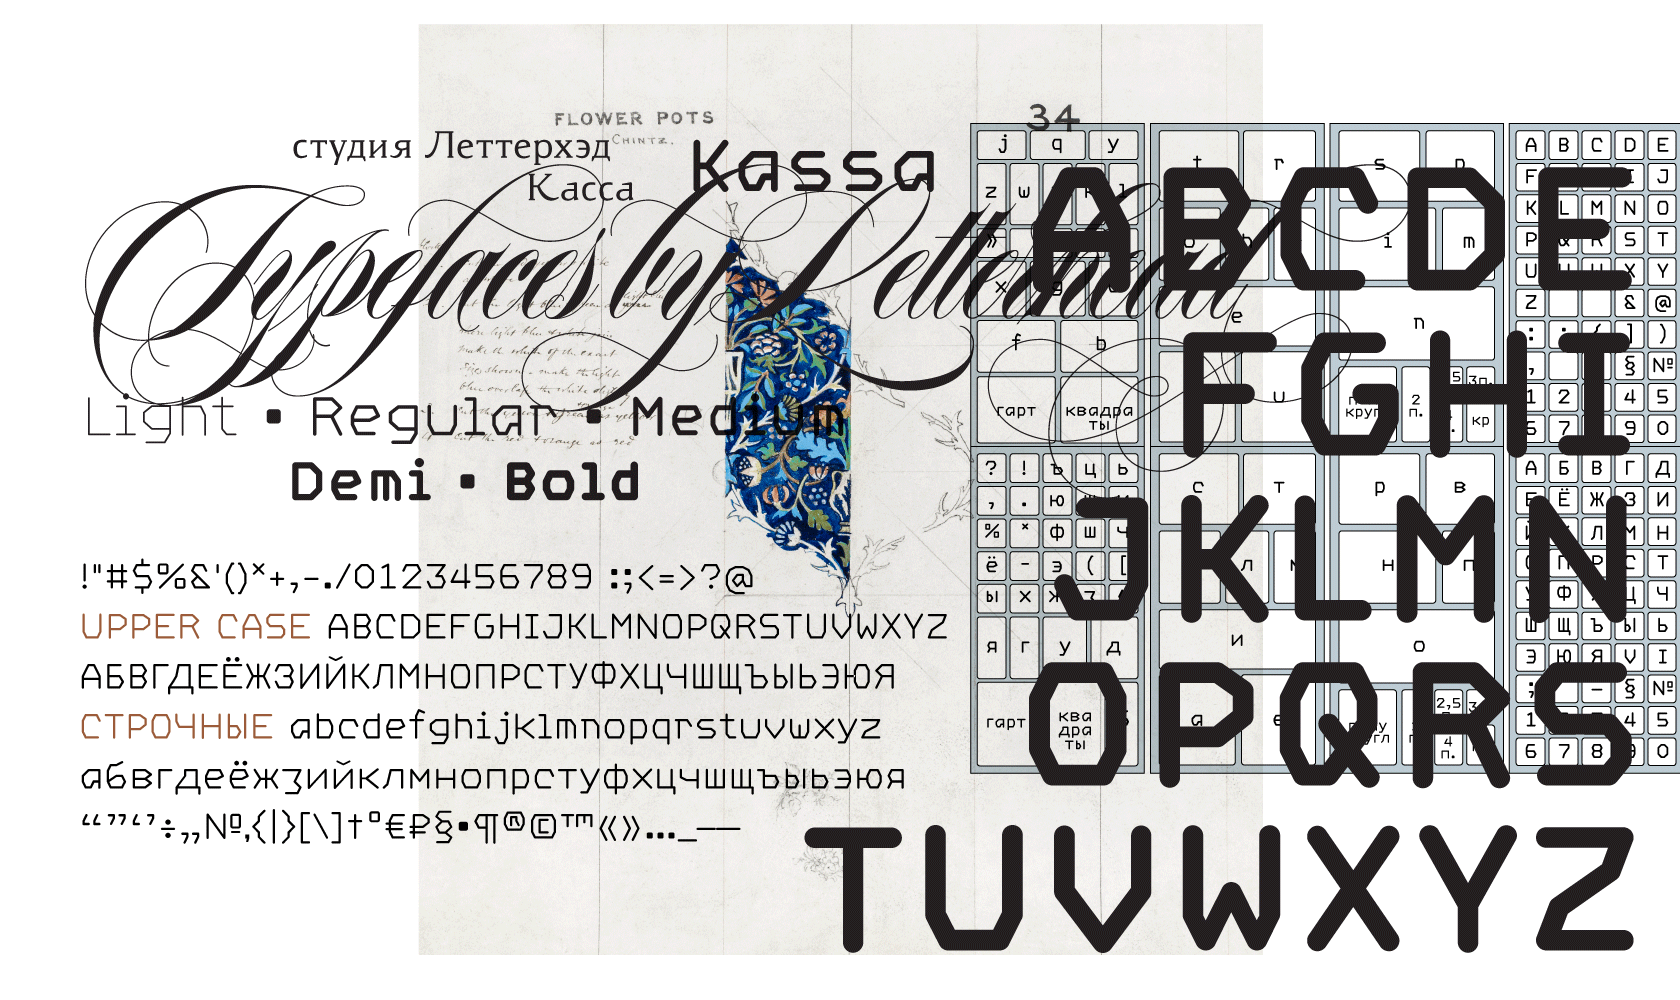 Шрифты из телеграмма на русском фото 24